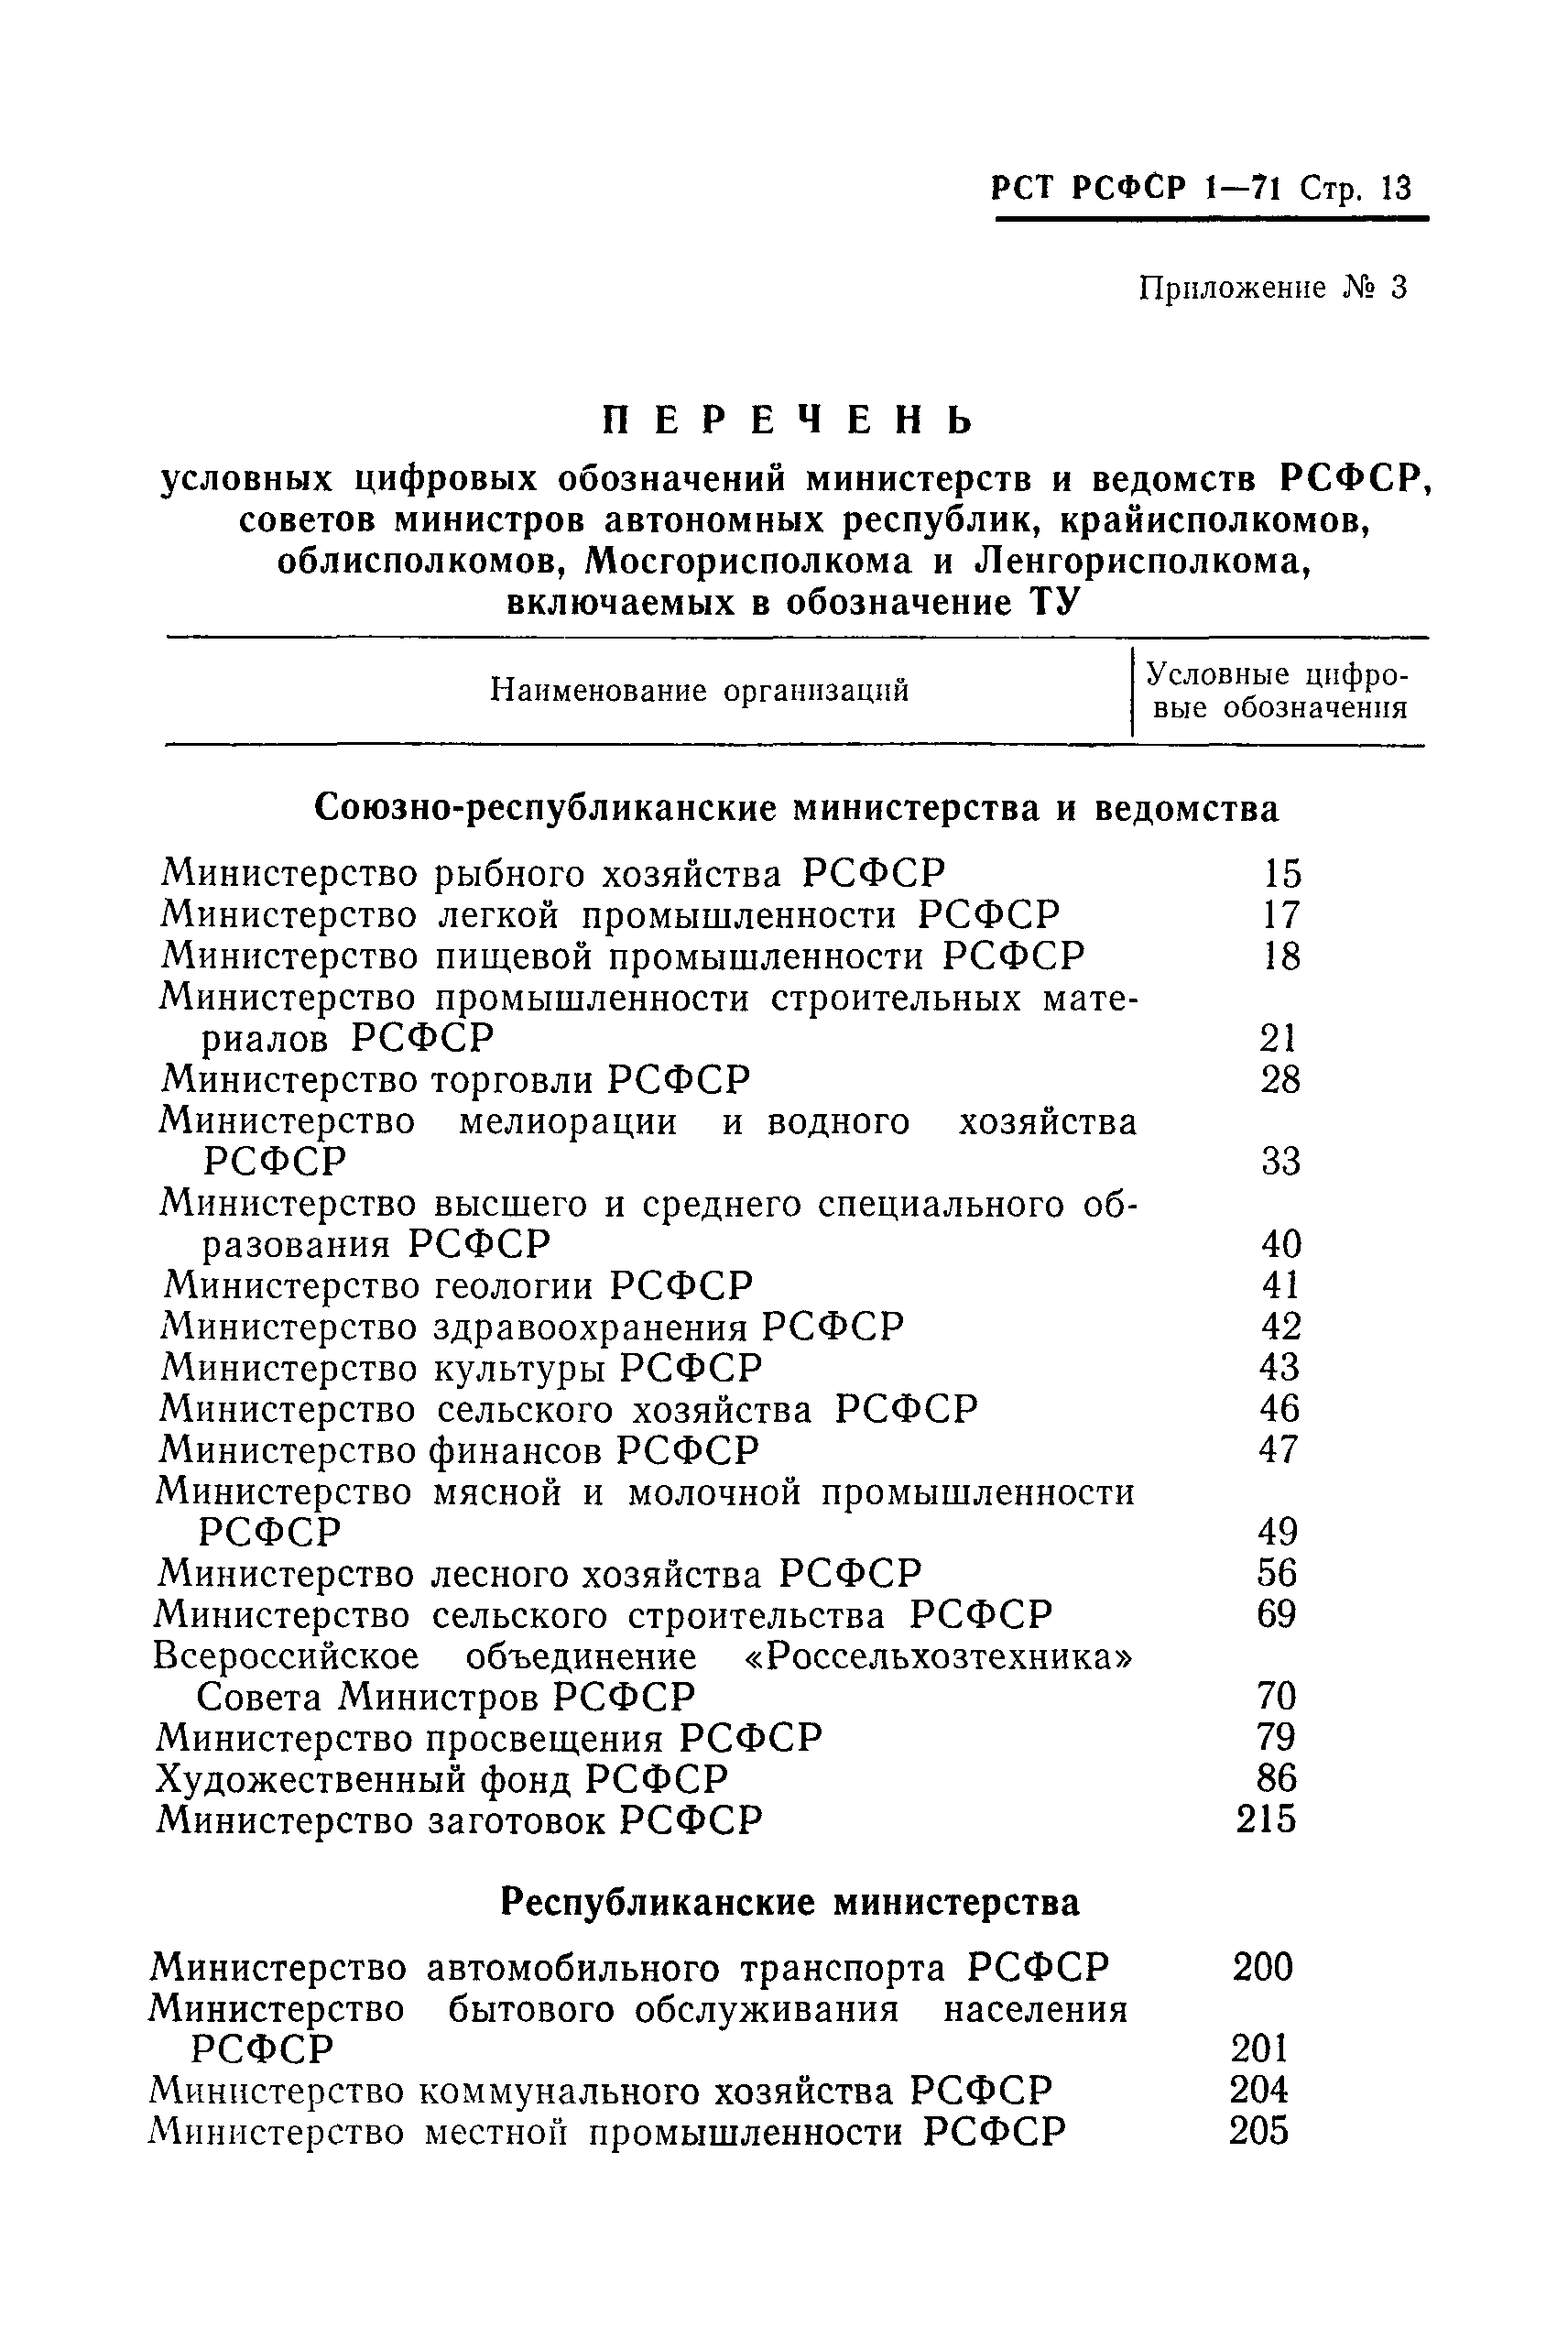 РСТ РСФСР 1-71